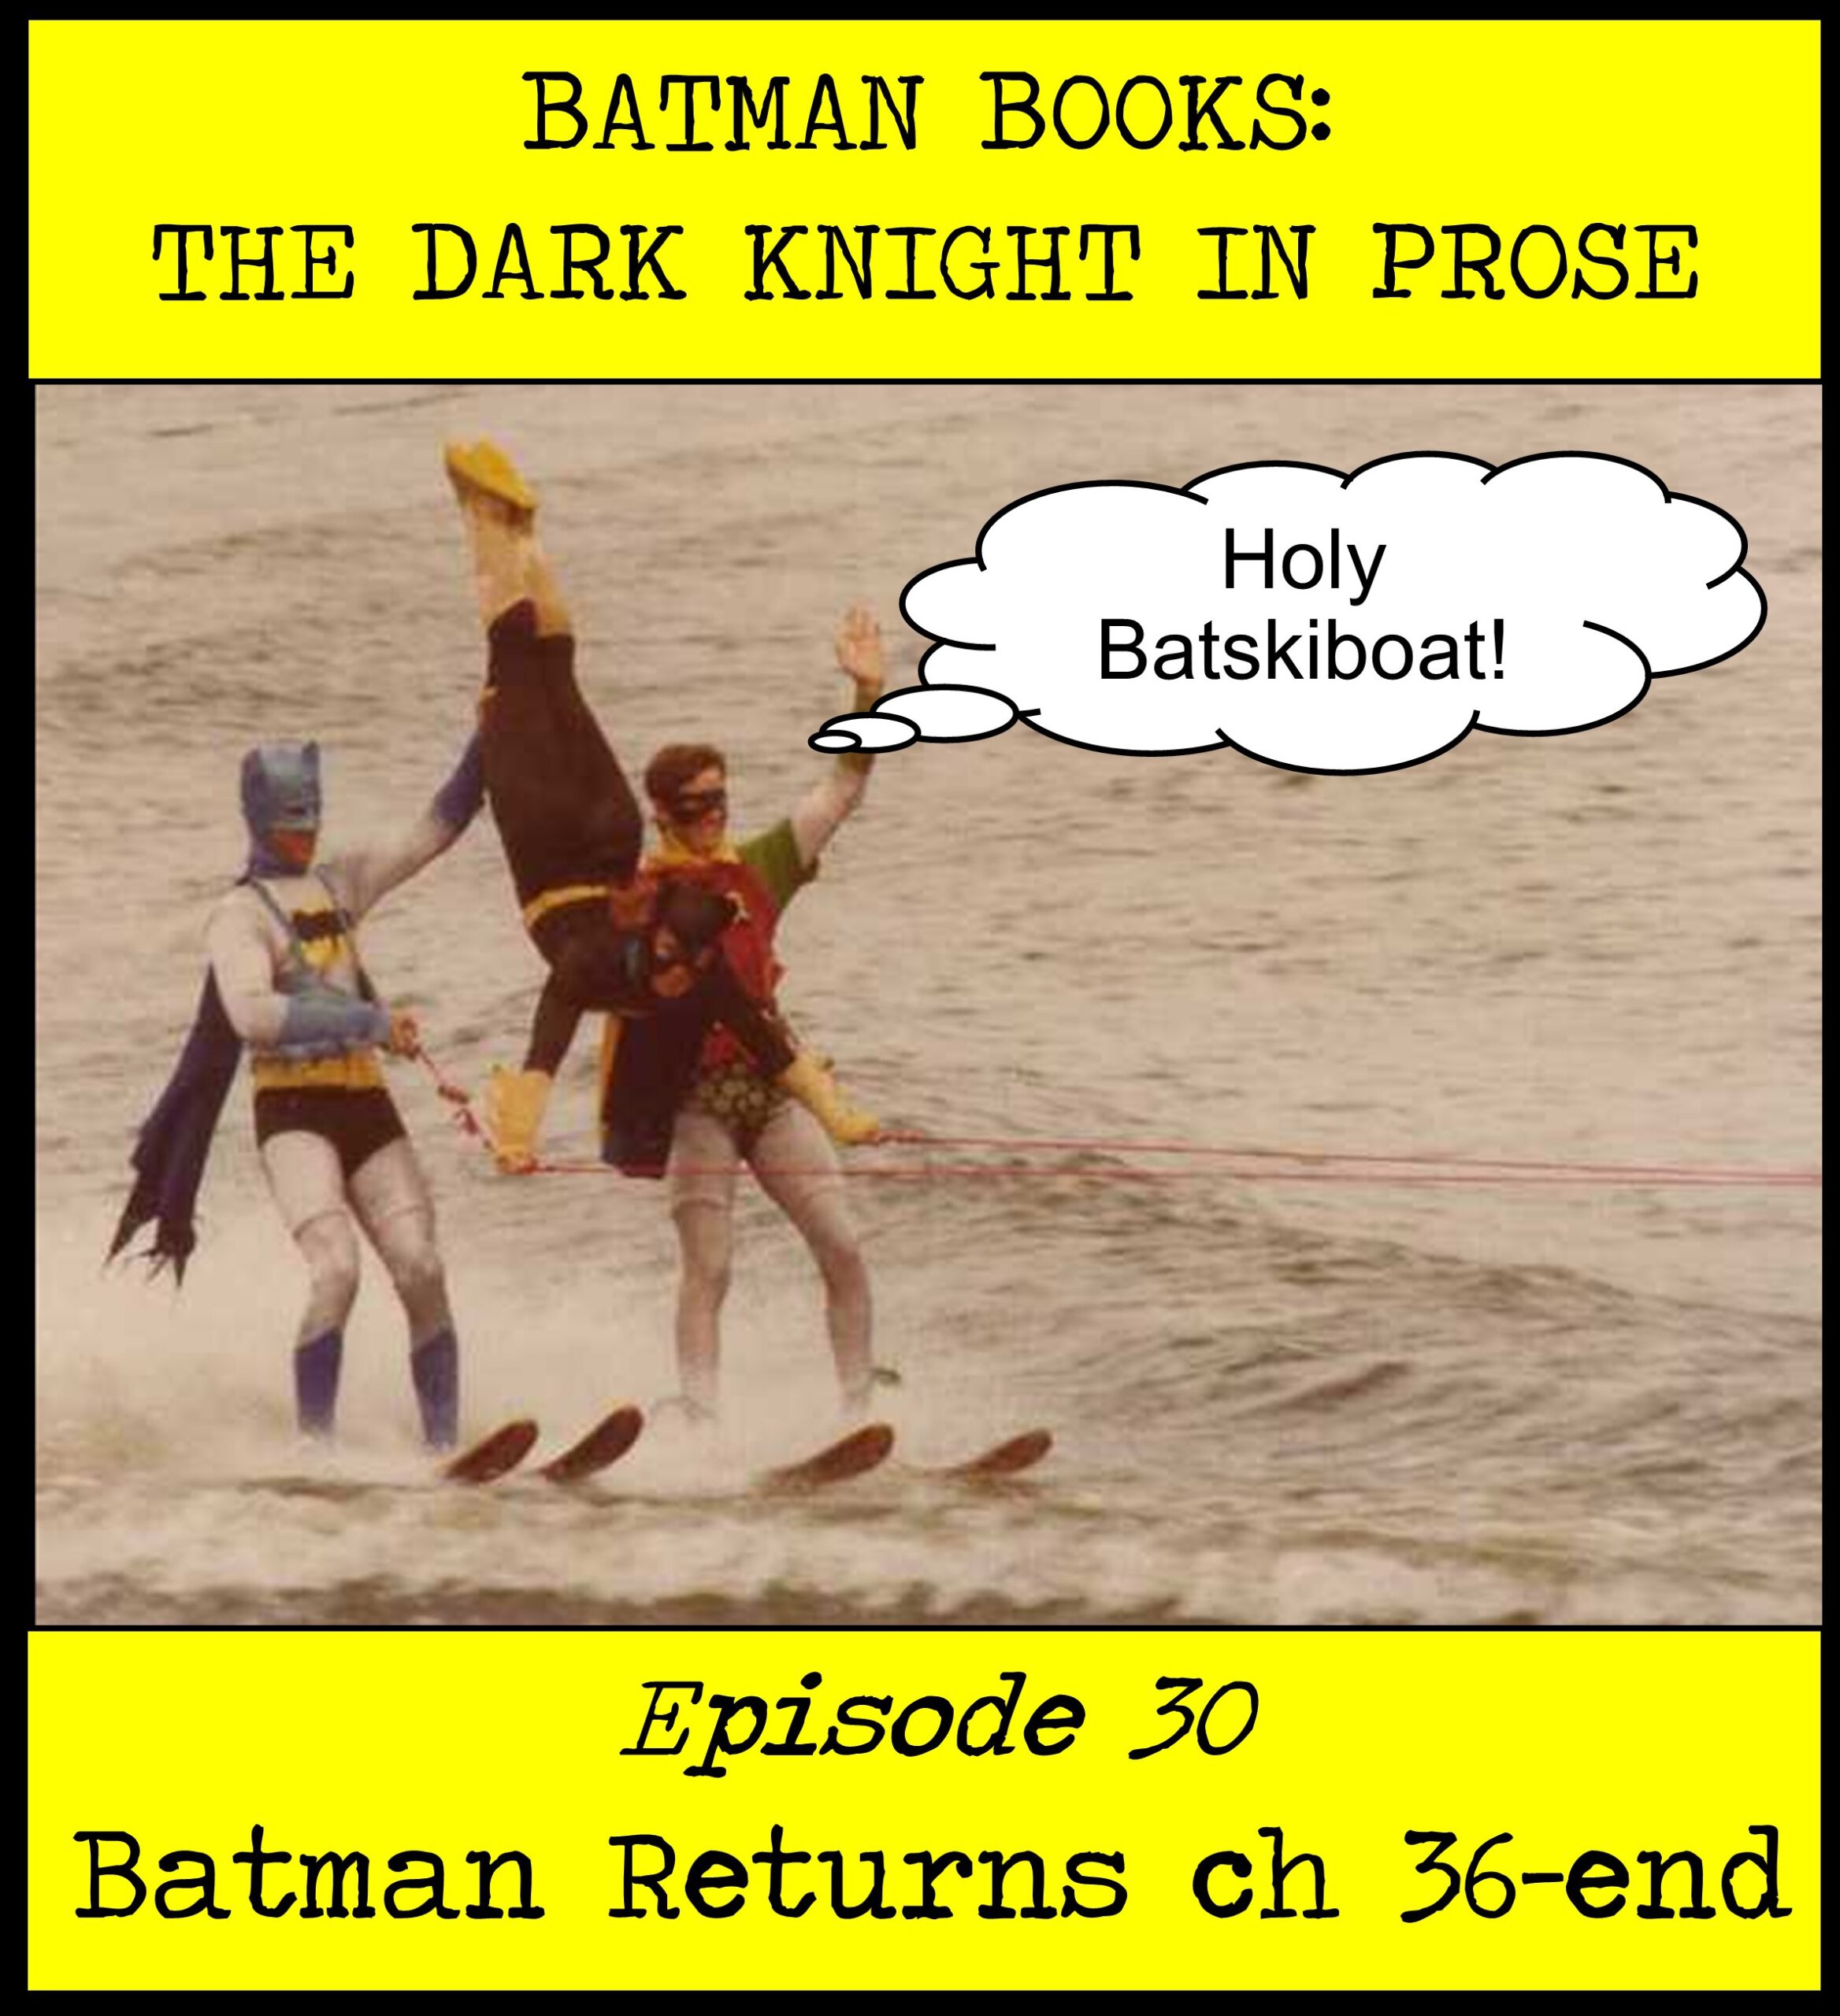 Batman Books: The Dark Knight in Prose Episode 30